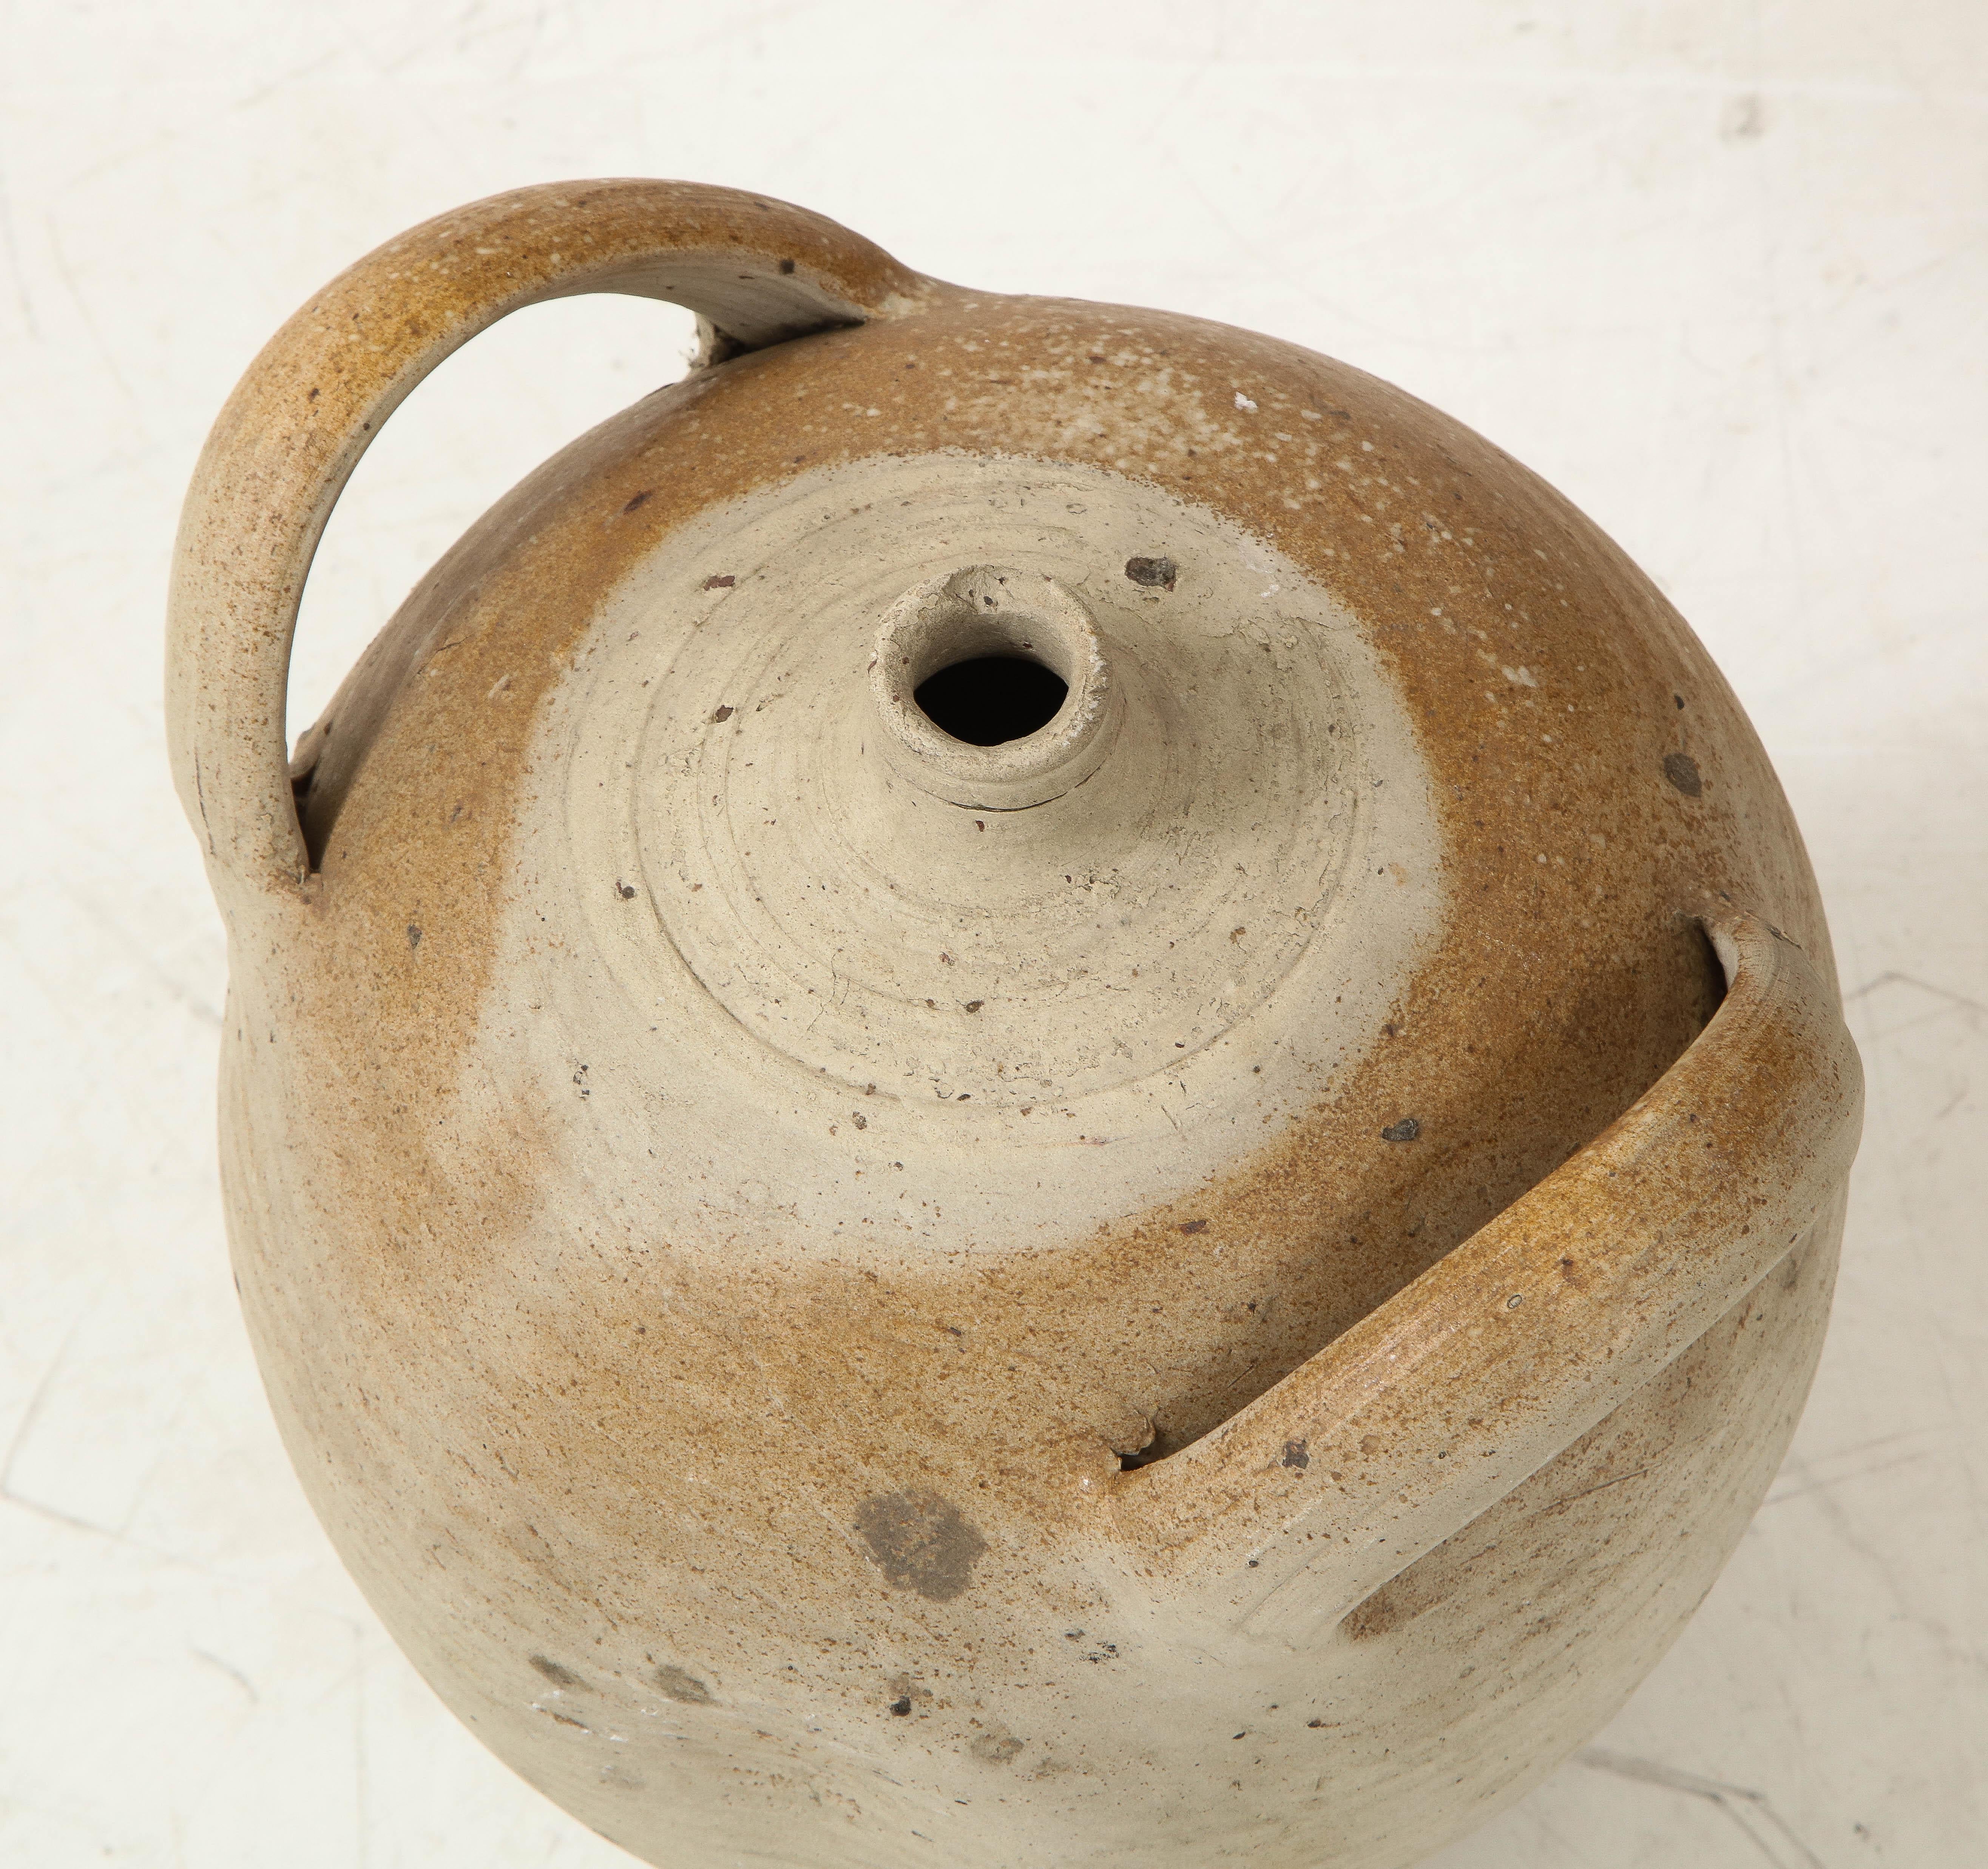 French Provincial Stoneware Vintage Pottery Oil Jar, Jug, Vase or Vessel 5